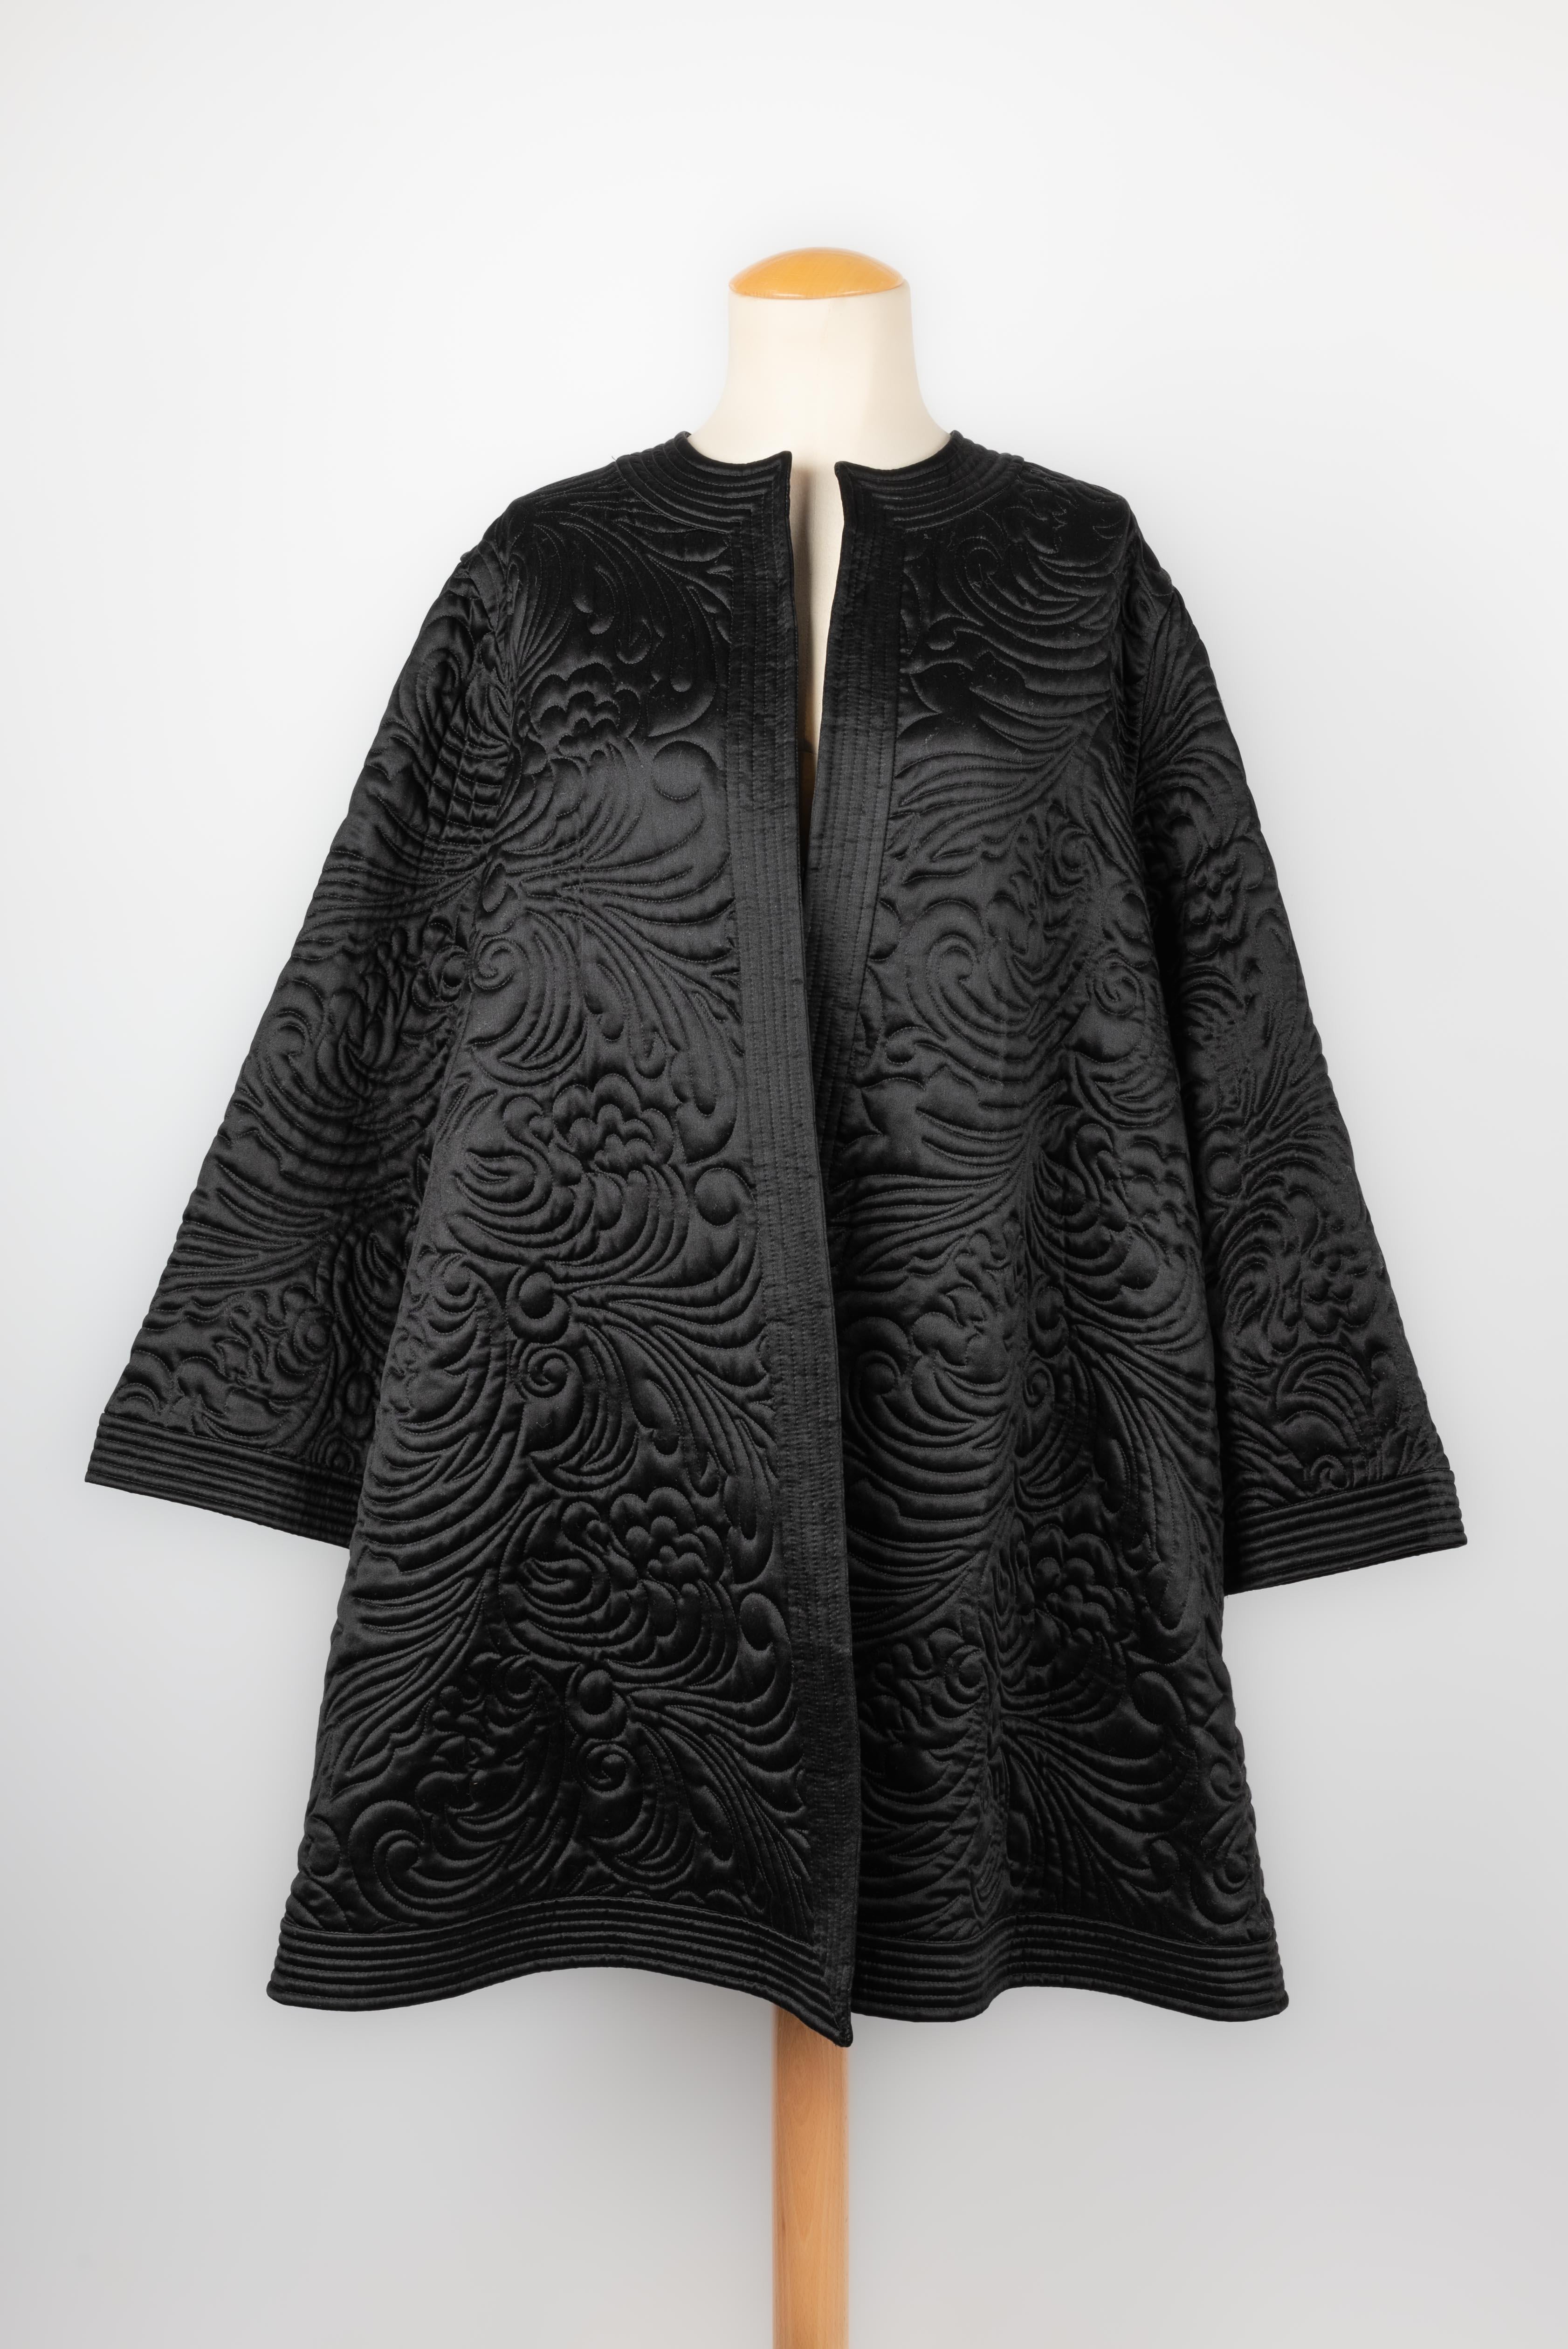 Valentino Haute Couture Kimonos-Doppeljacken 1990 für Damen oder Herren im Angebot